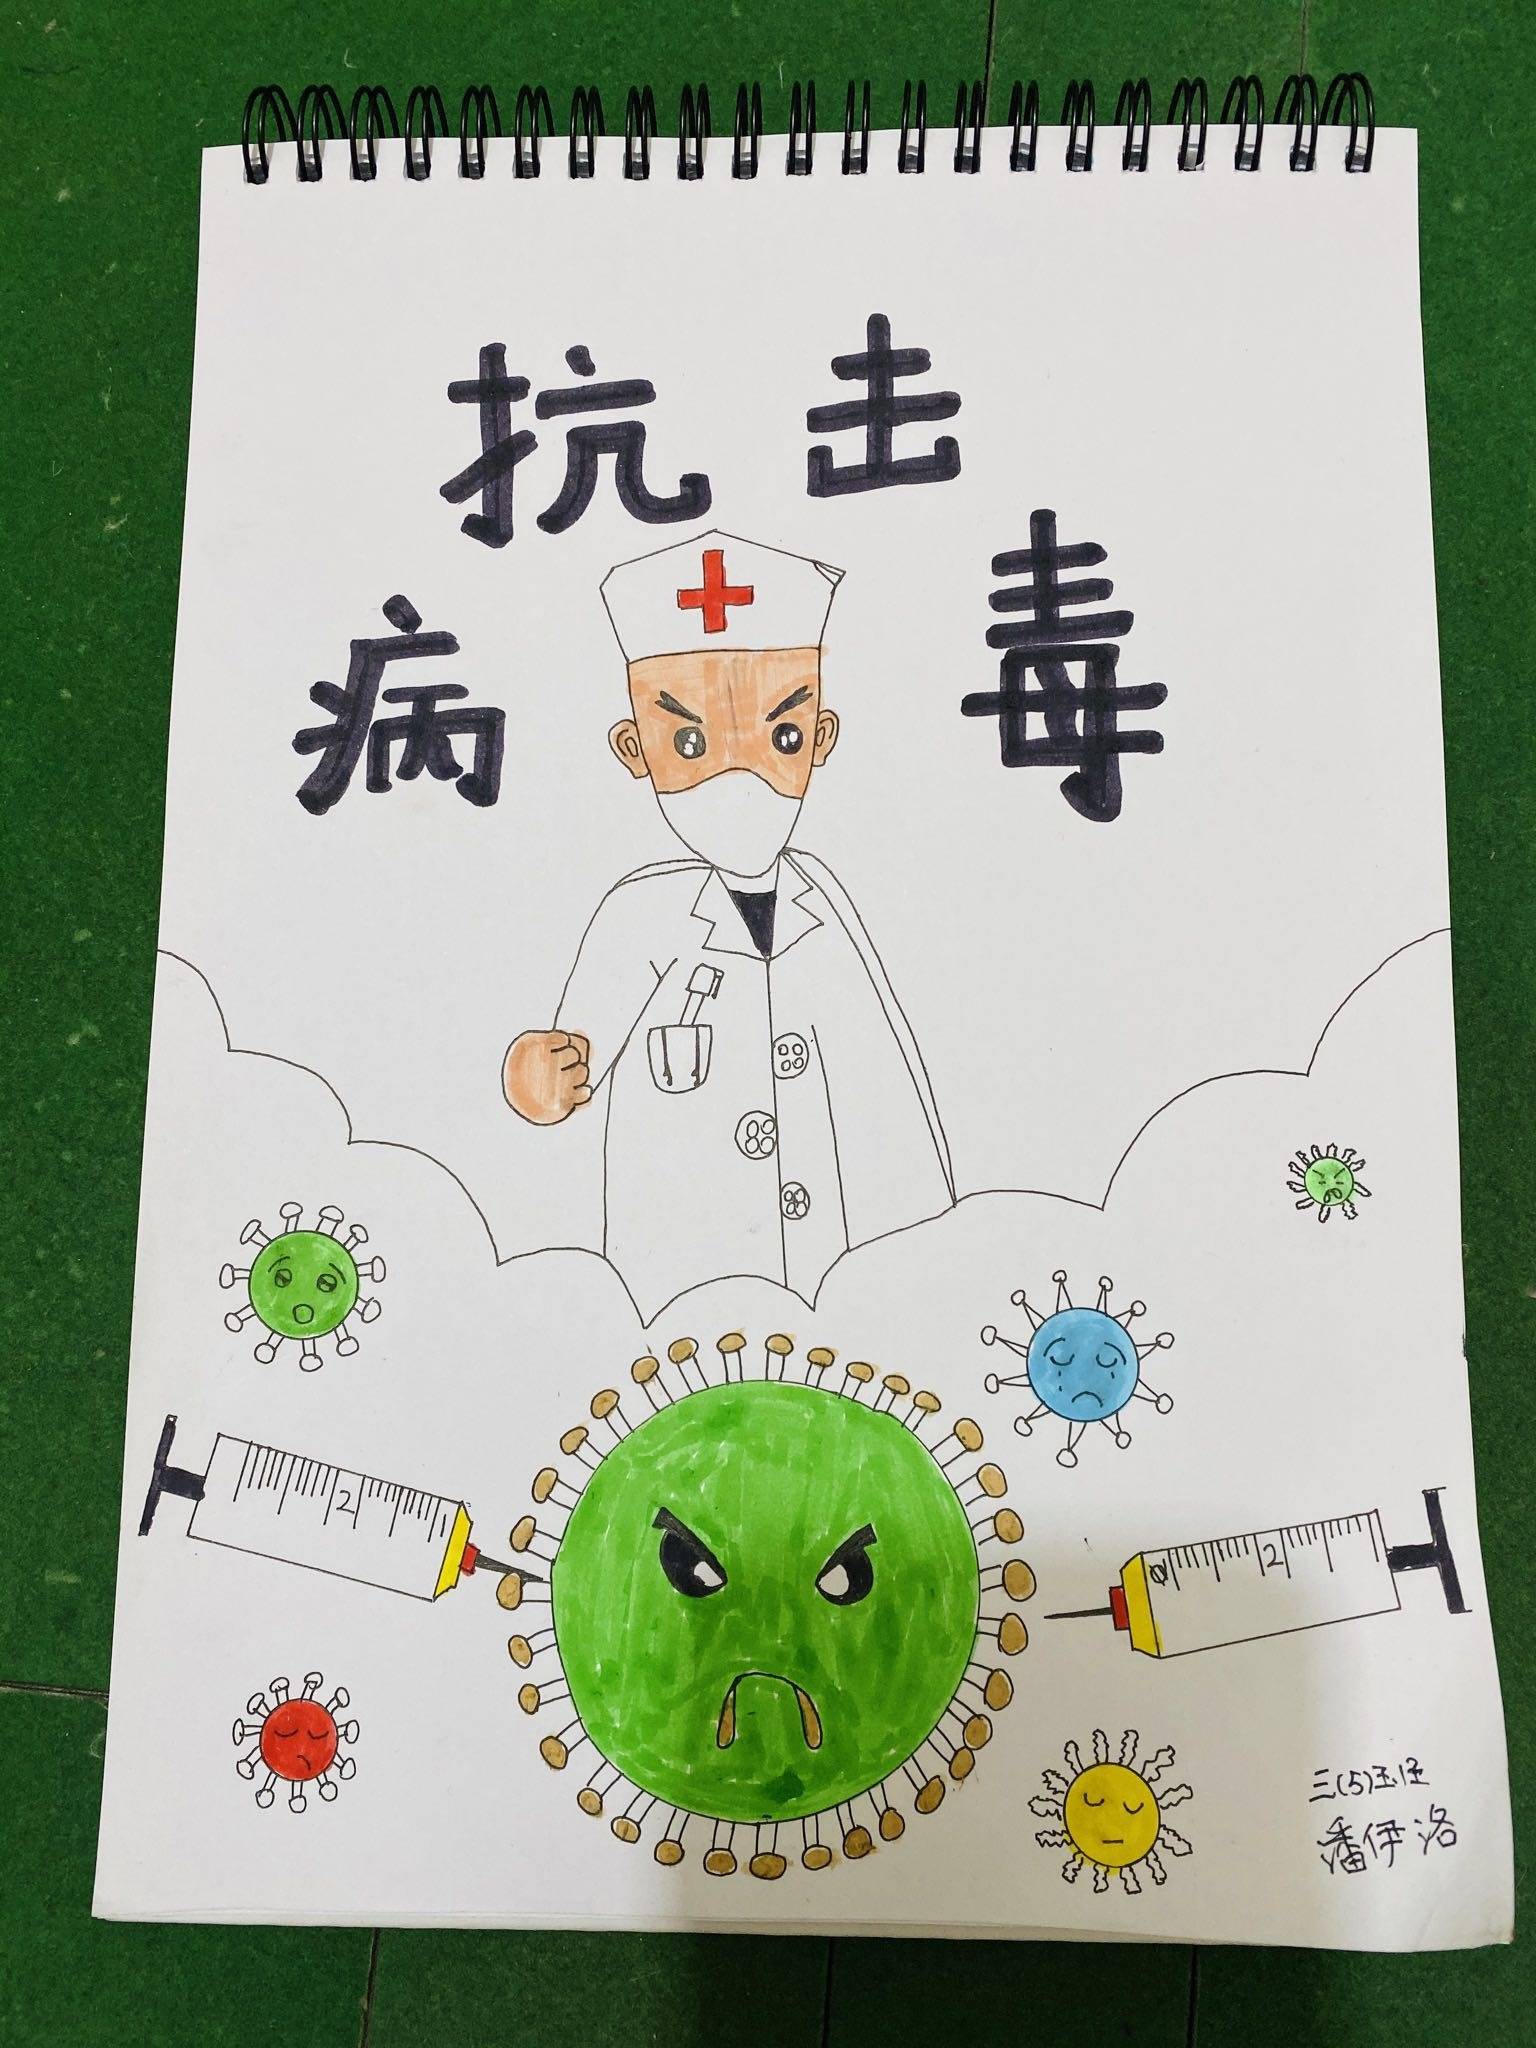 龙江实验学校三年级5班潘伊洛《抗击病毒》.jpg